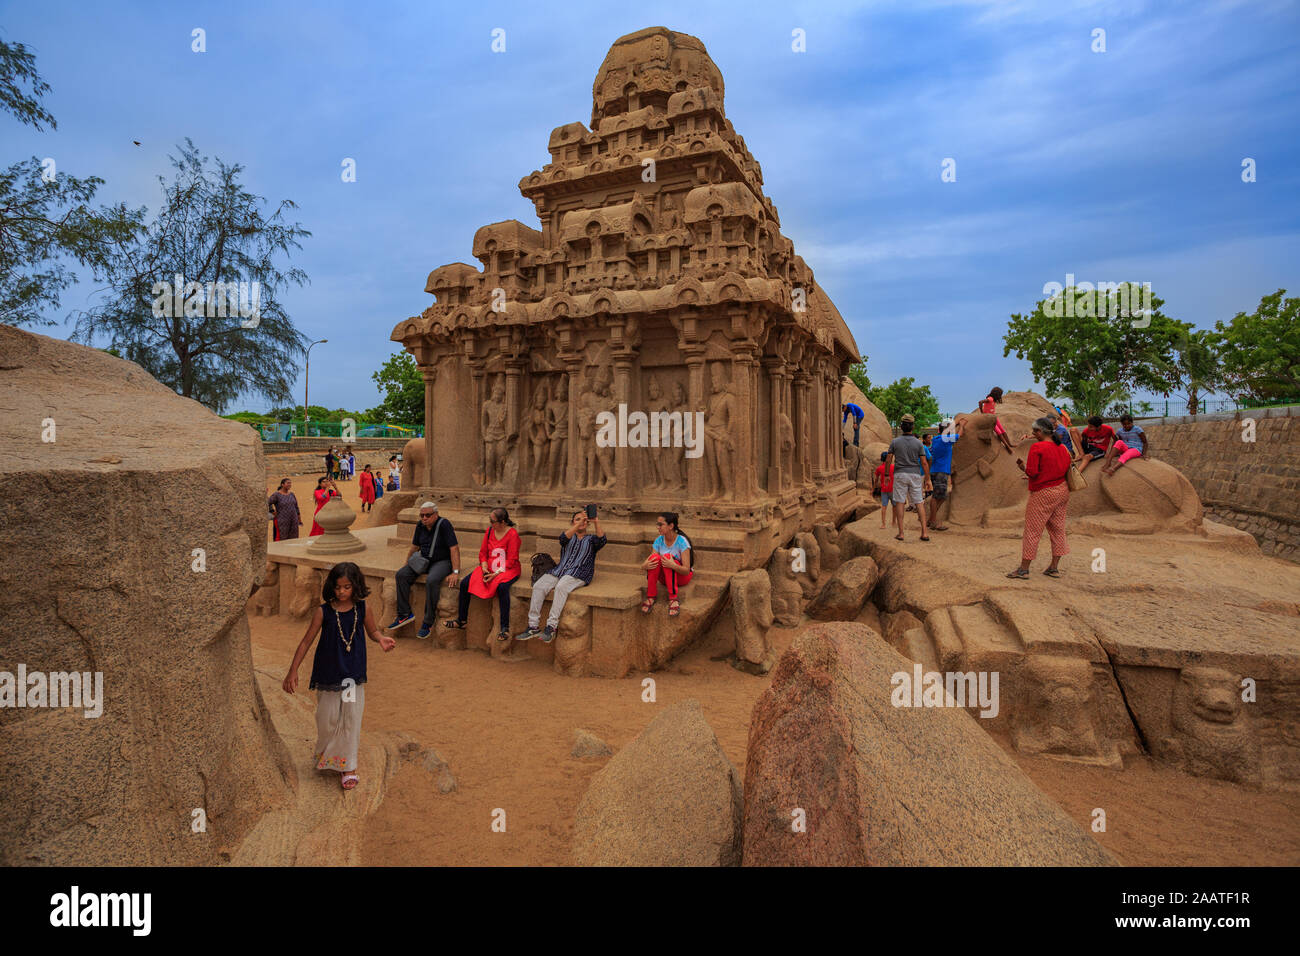 Cinque rathas (Pancha Rathas) - Il famoso tempio di Mahabalipuram (India). La struttura è realizzata in pietra monolitica. Foto Stock